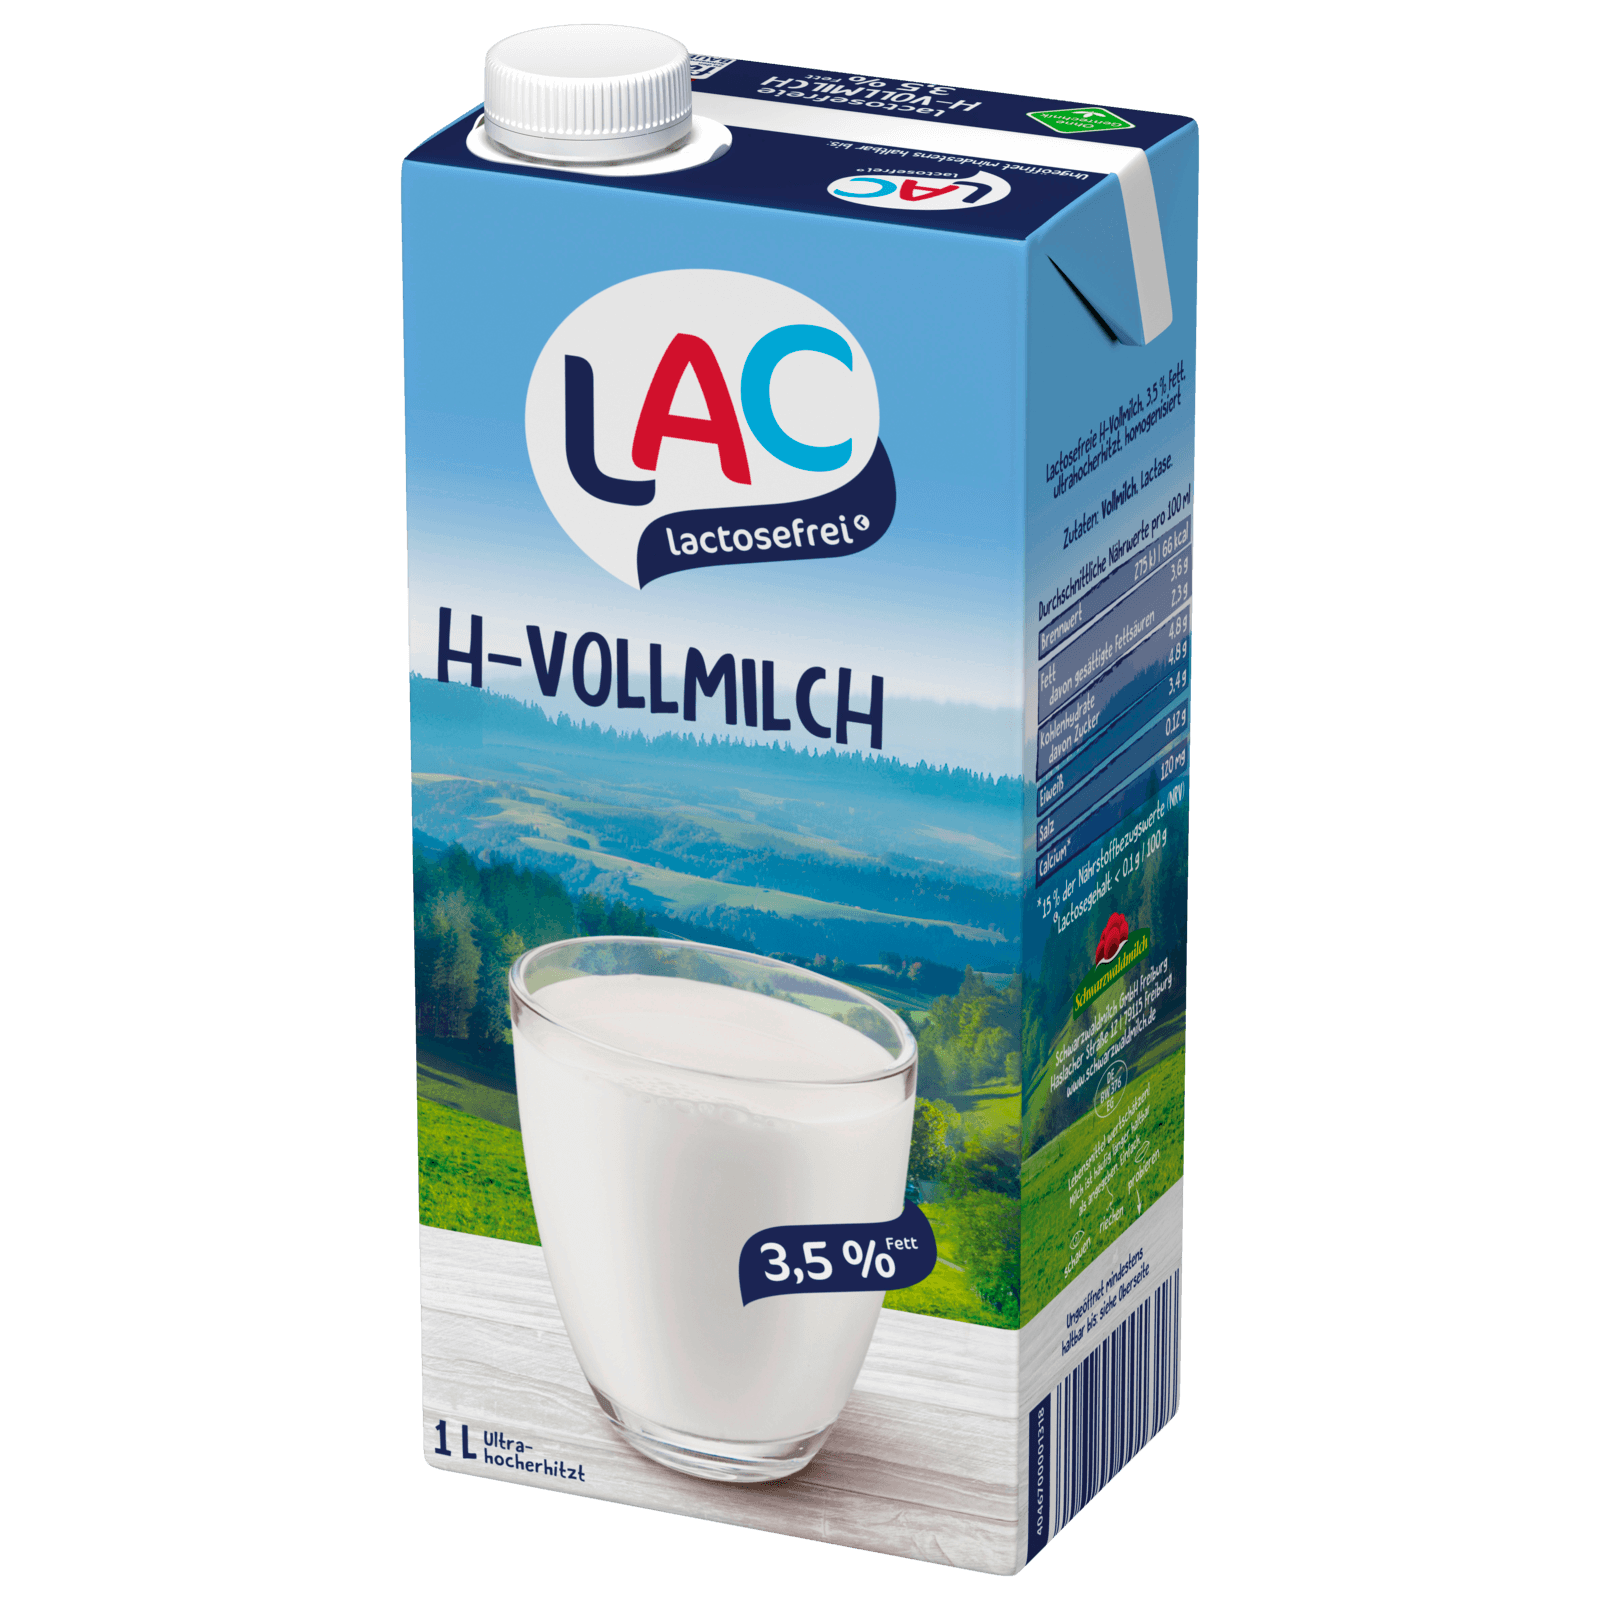 Schwarzwaldmilch H-Milch 3,5% lactosefrei  für 1.99 EUR